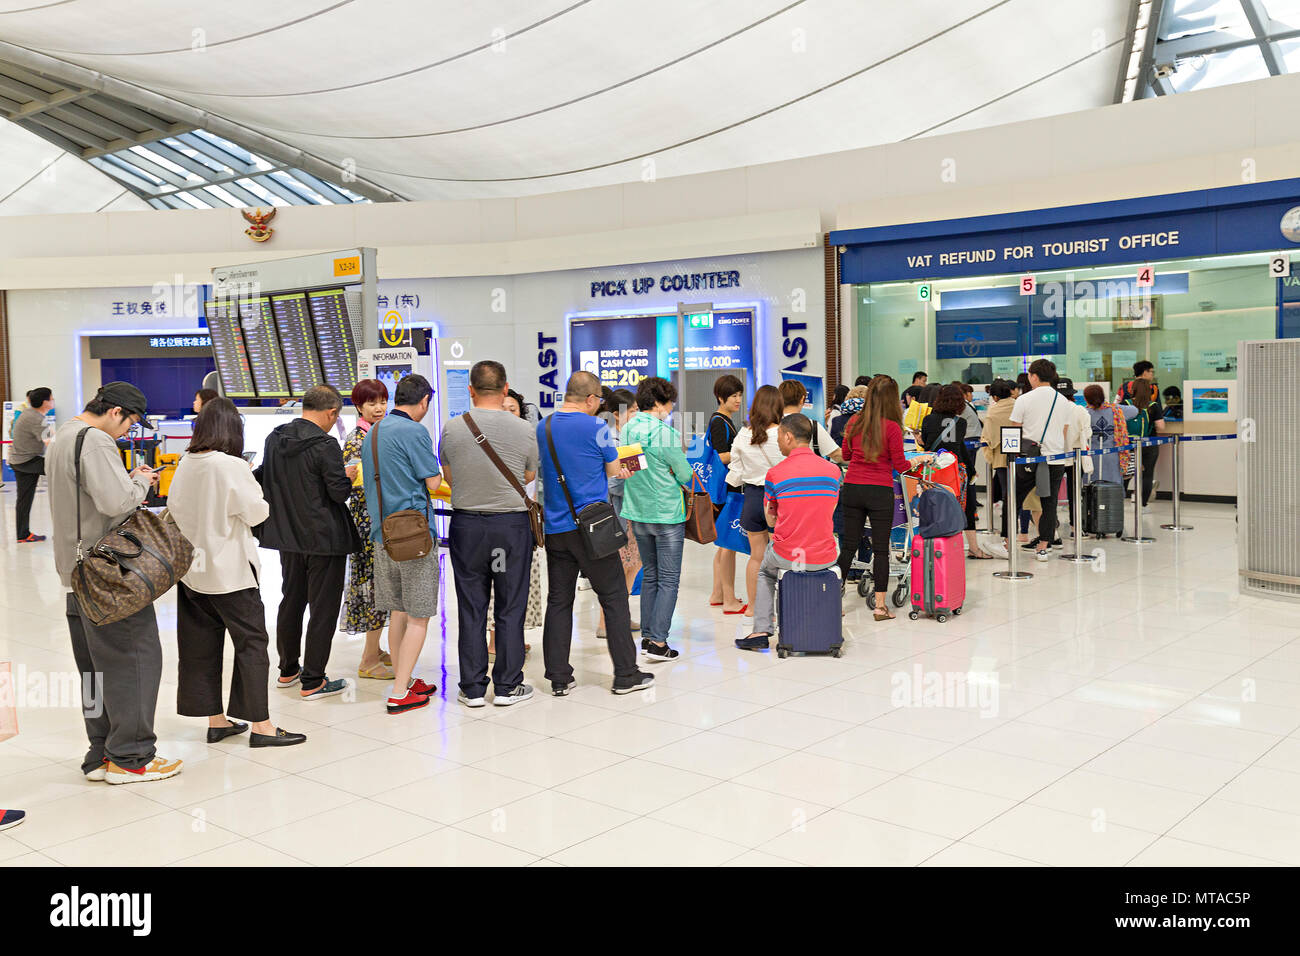 Coda di persone al rimborso IVA ufficio turistico all'aeroporto di Bangkok, Tailandia Foto Stock